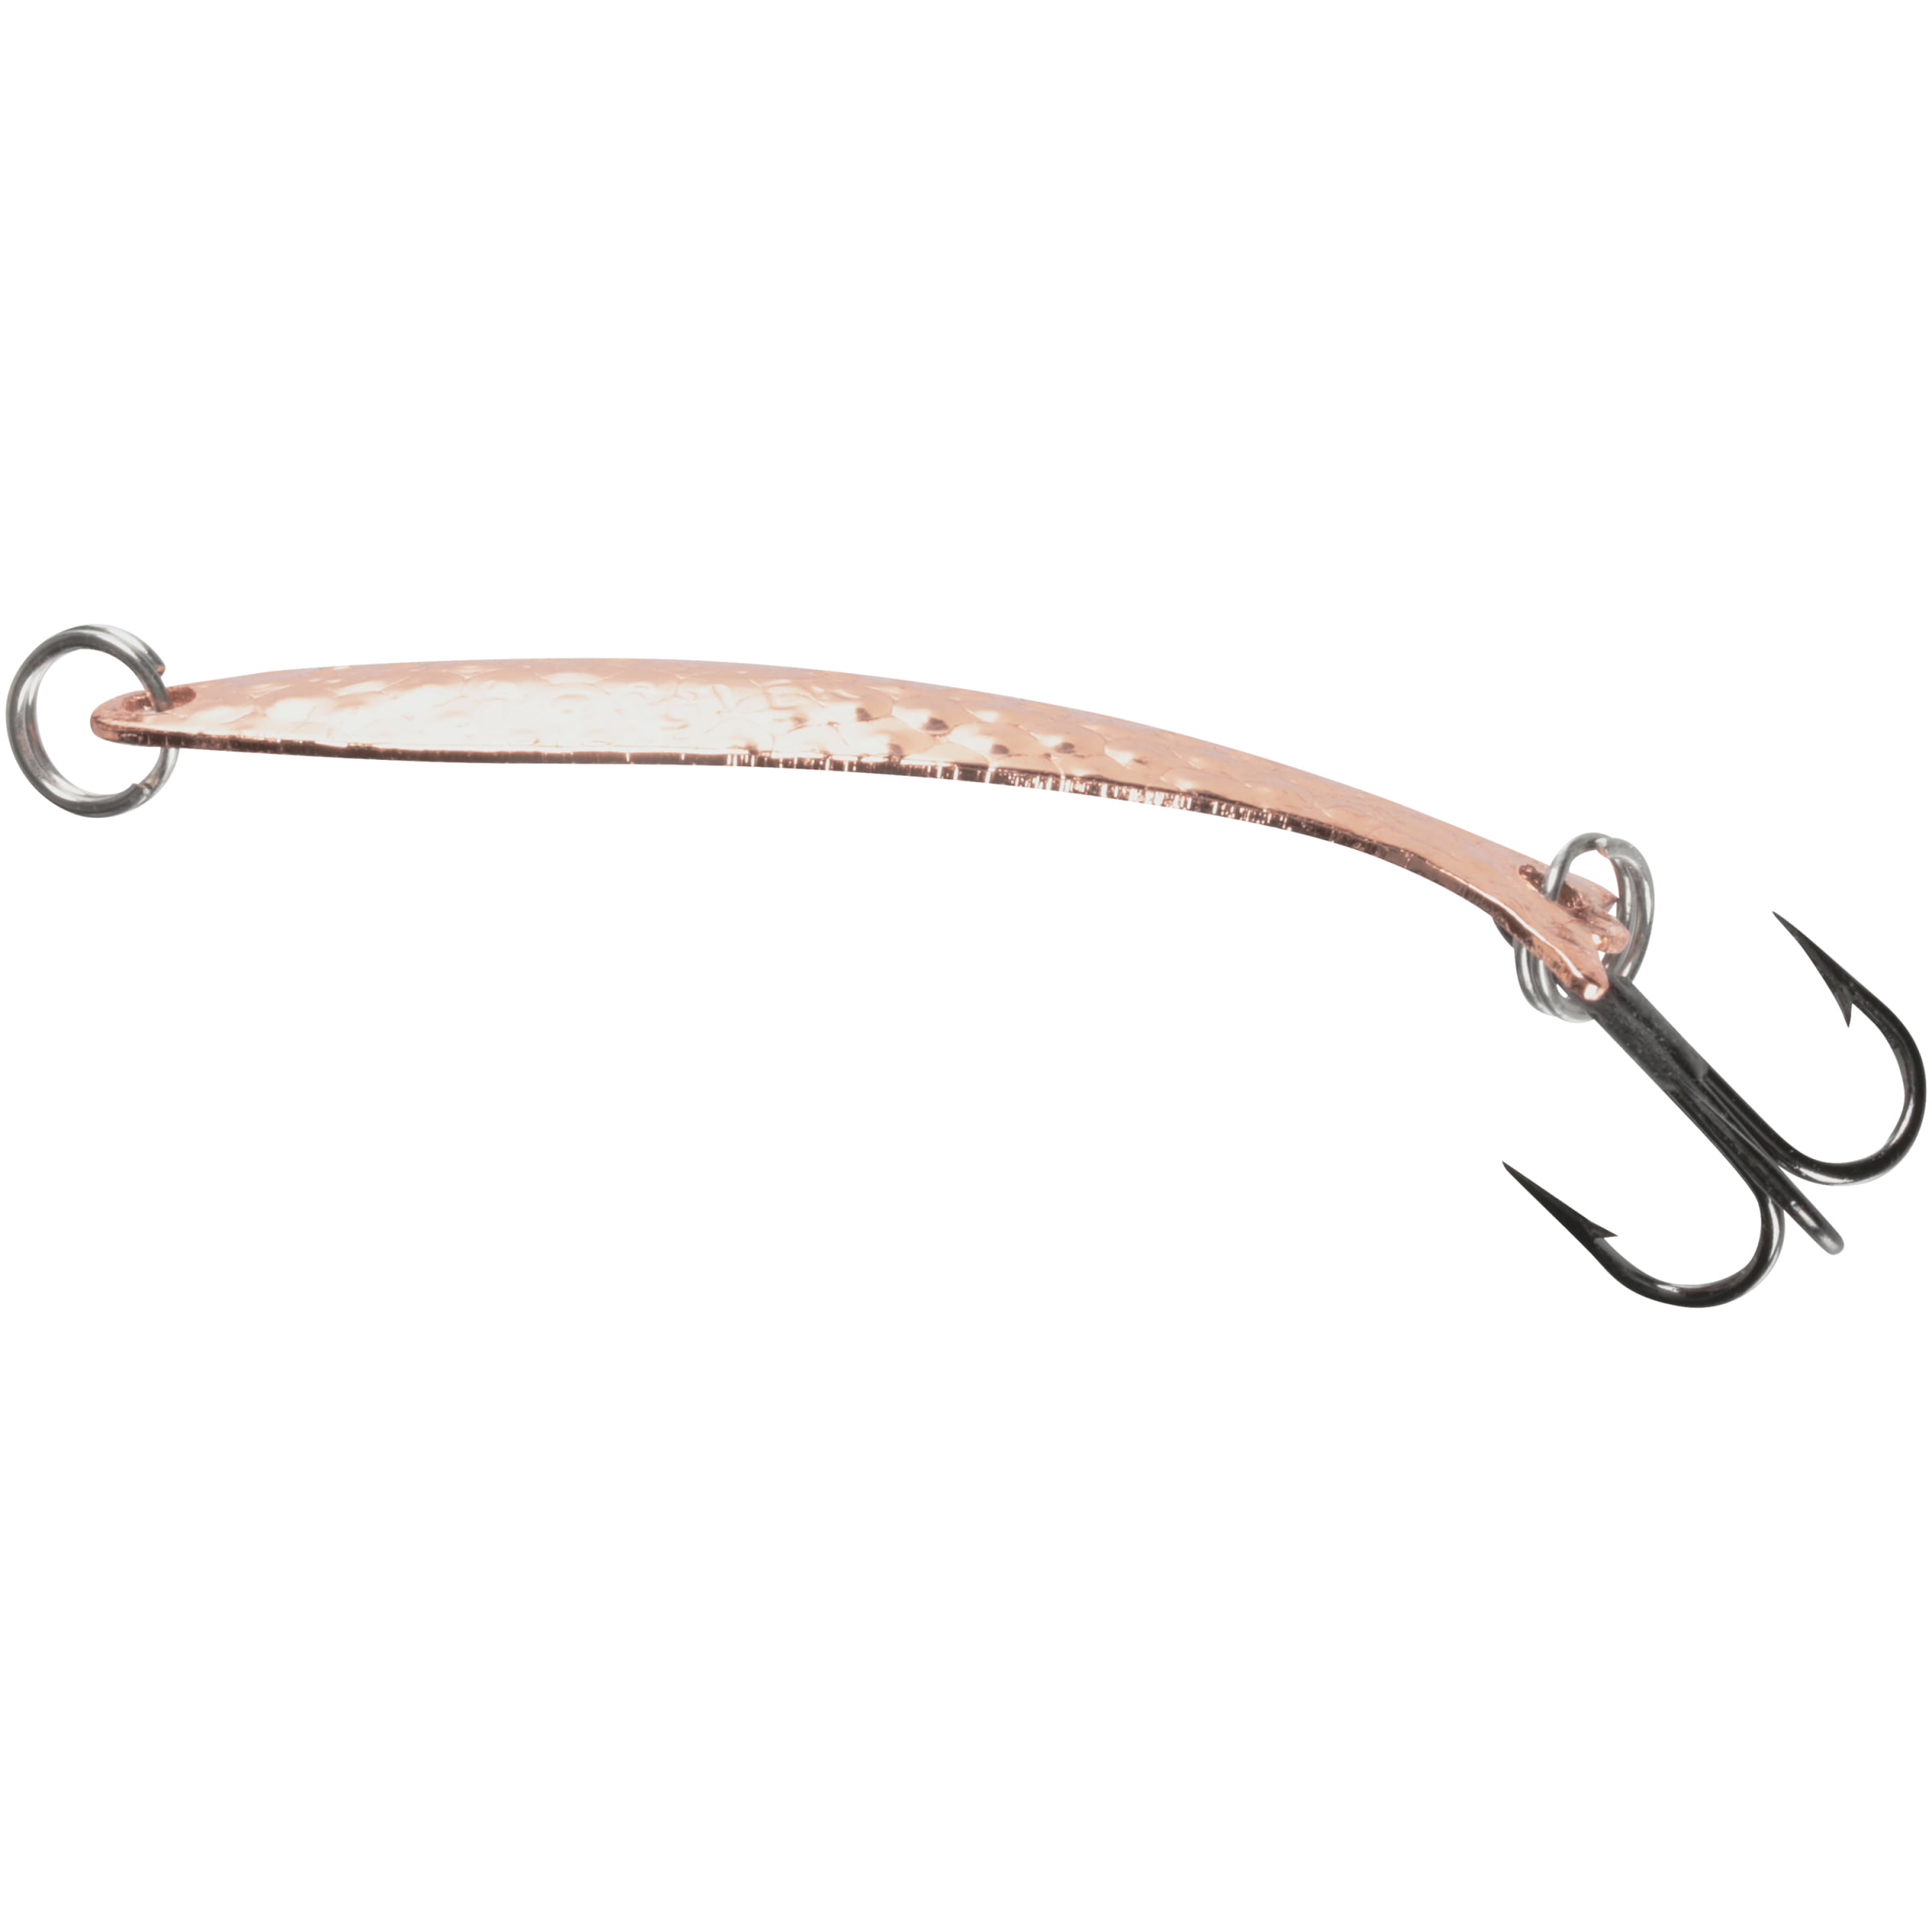 Mooselook Wobbler, Midget - Copper Nuwrinkle, Fishing Spoons 